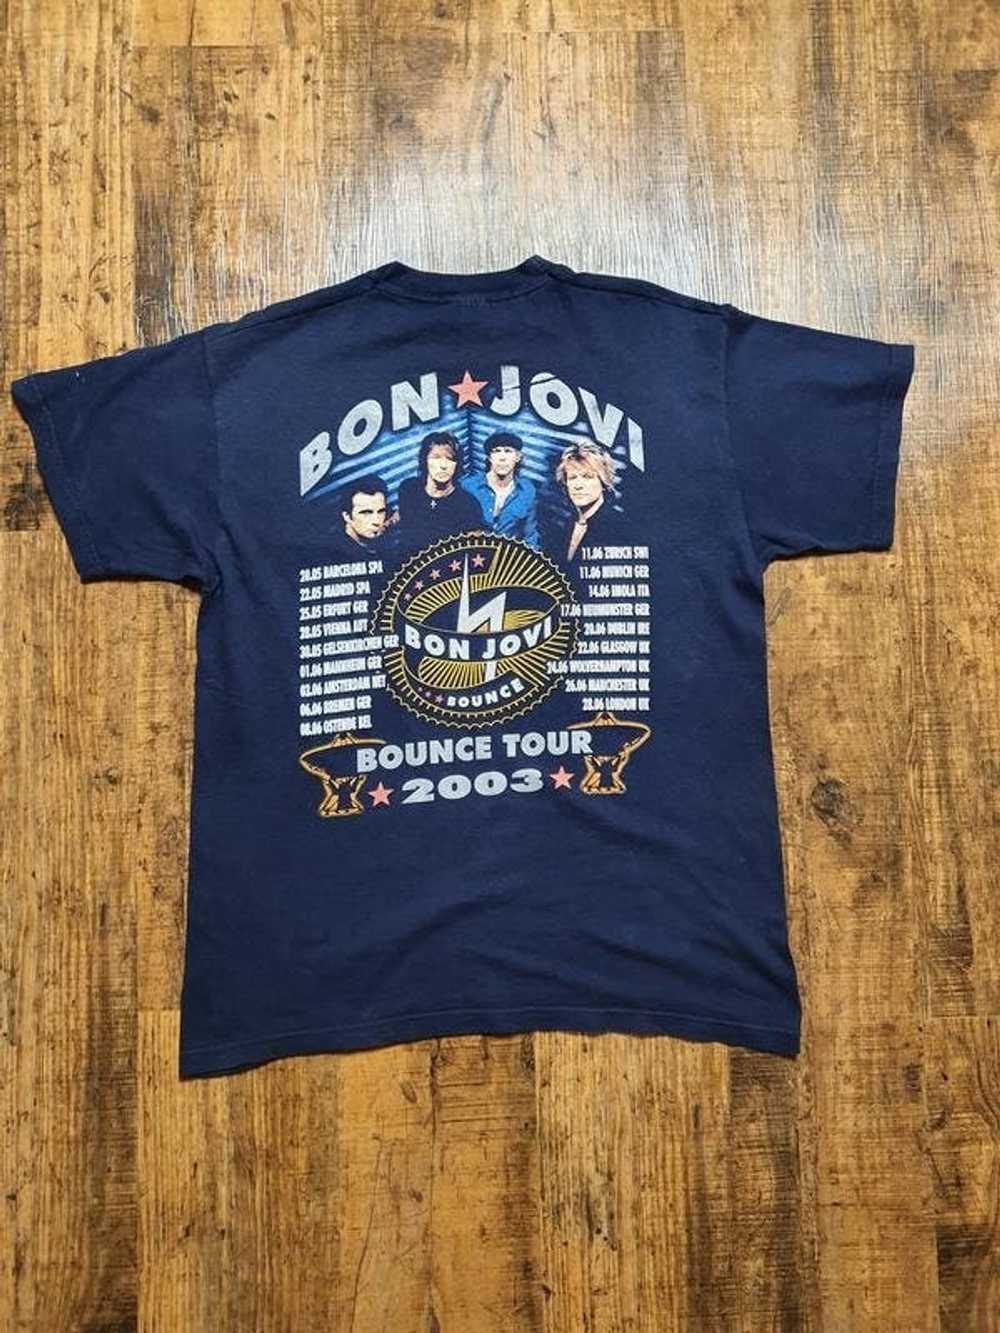 Band Tees × Vintage bon jovi 2003 tour t-shirt - image 3